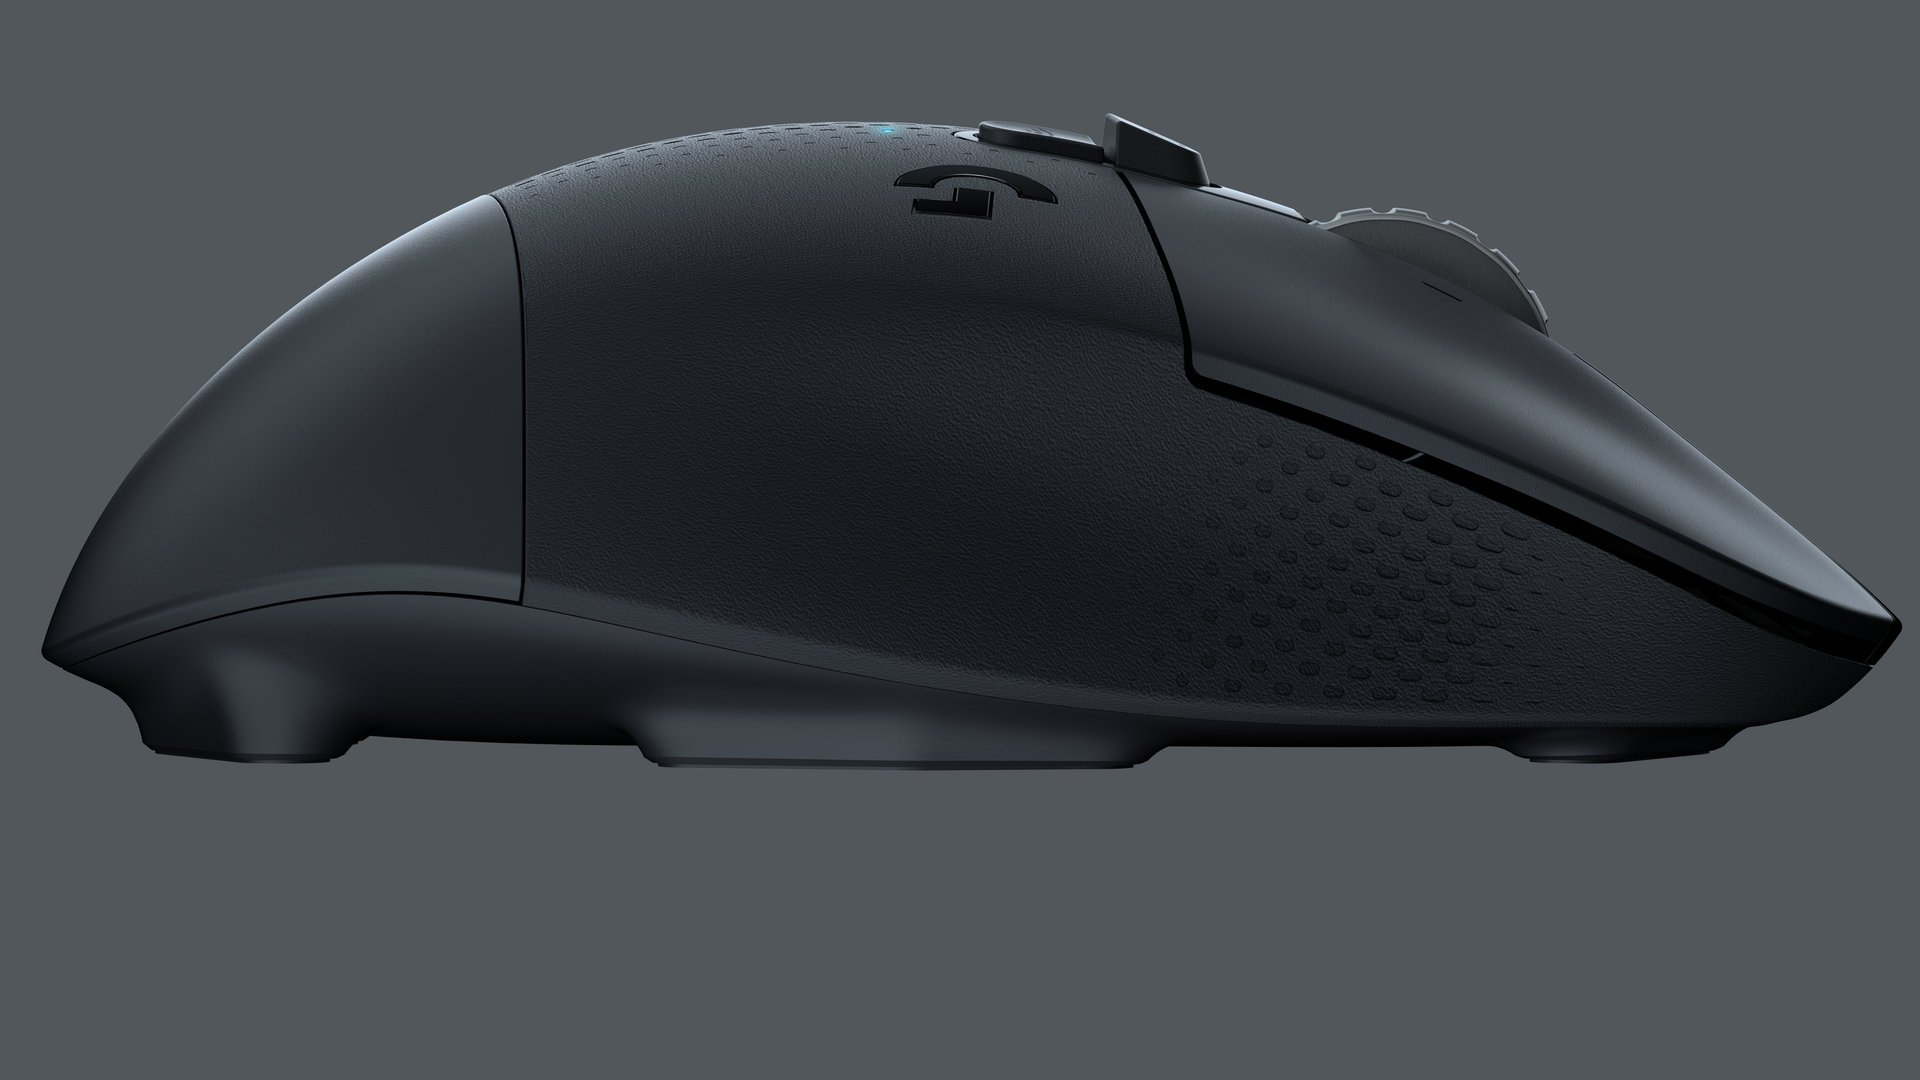 Image 9 : G604 Lightspeed : la nouvelle souris gaming sans fil de Logitech pour les MMO